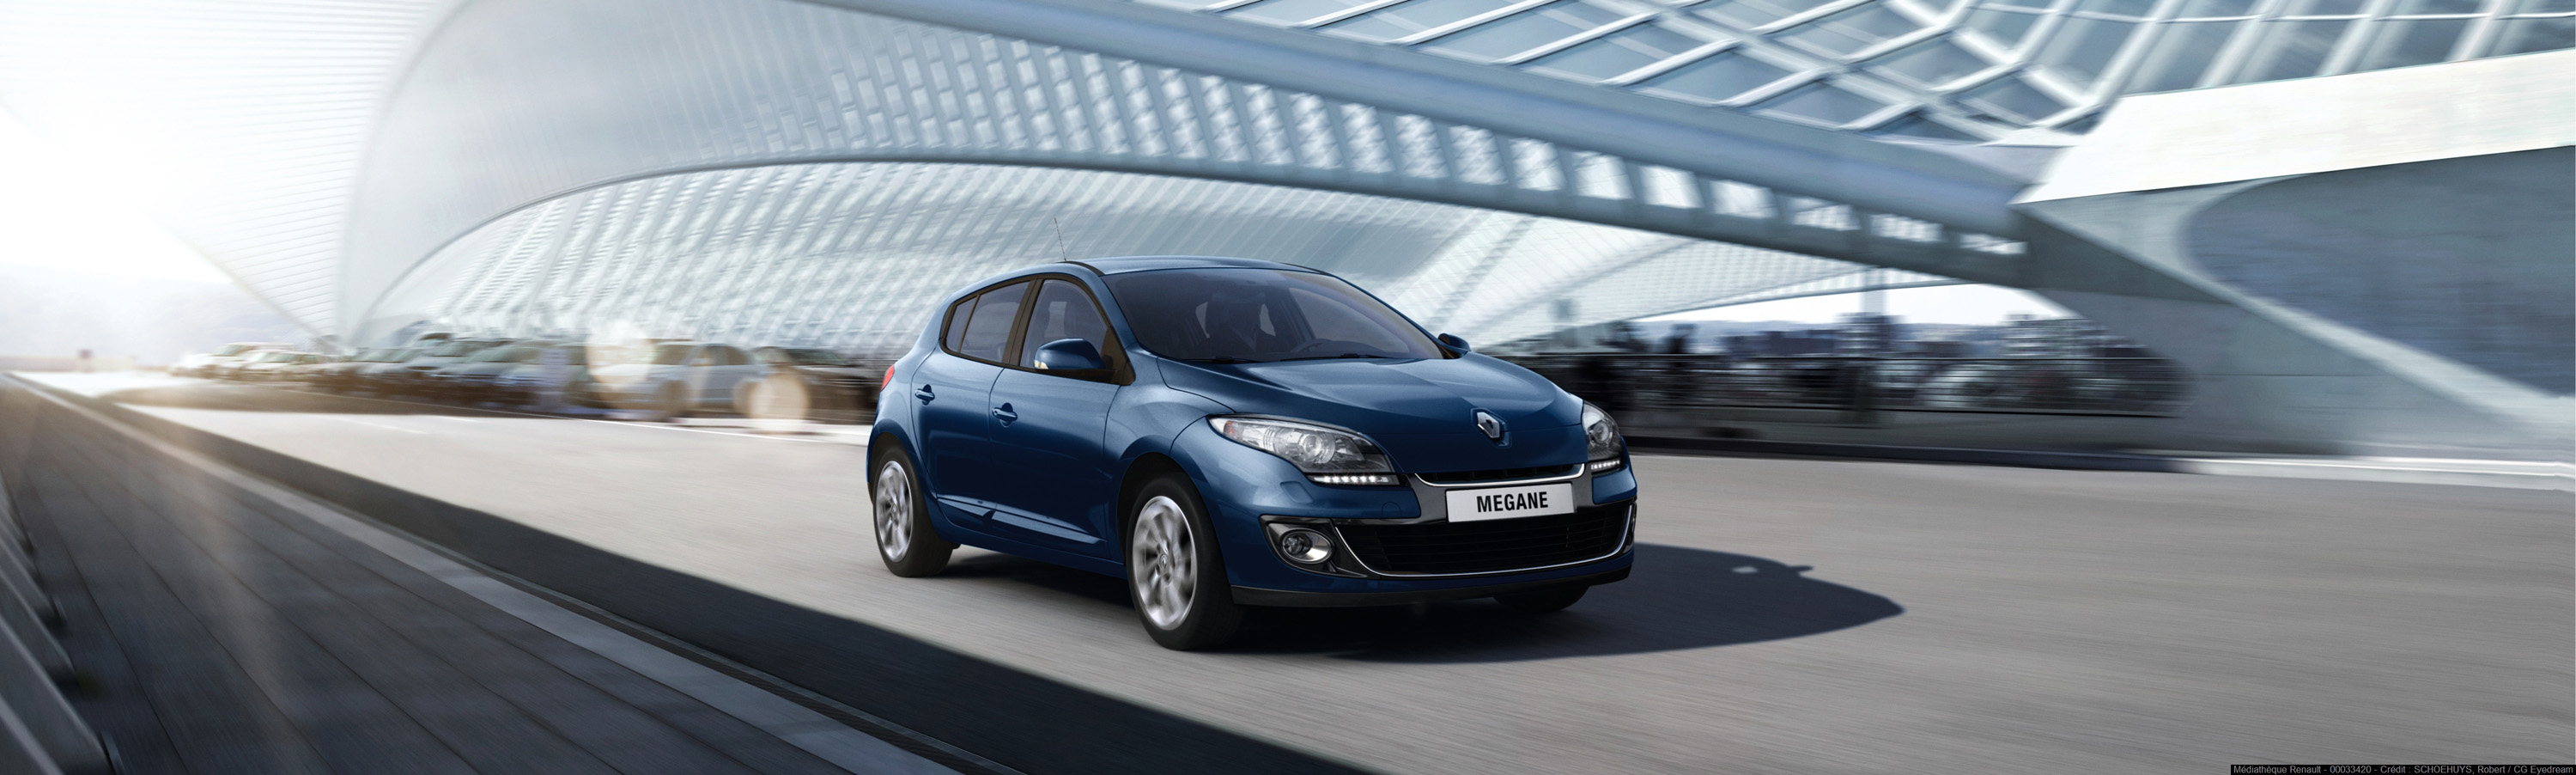 Тройная выгода на Renault Fluence и Megane Hatchback в Автоцентре «ОВОД»:  Скидка 50 000 рублей, кредит 2,9% на 2 года и комплект зимних шин в подарок